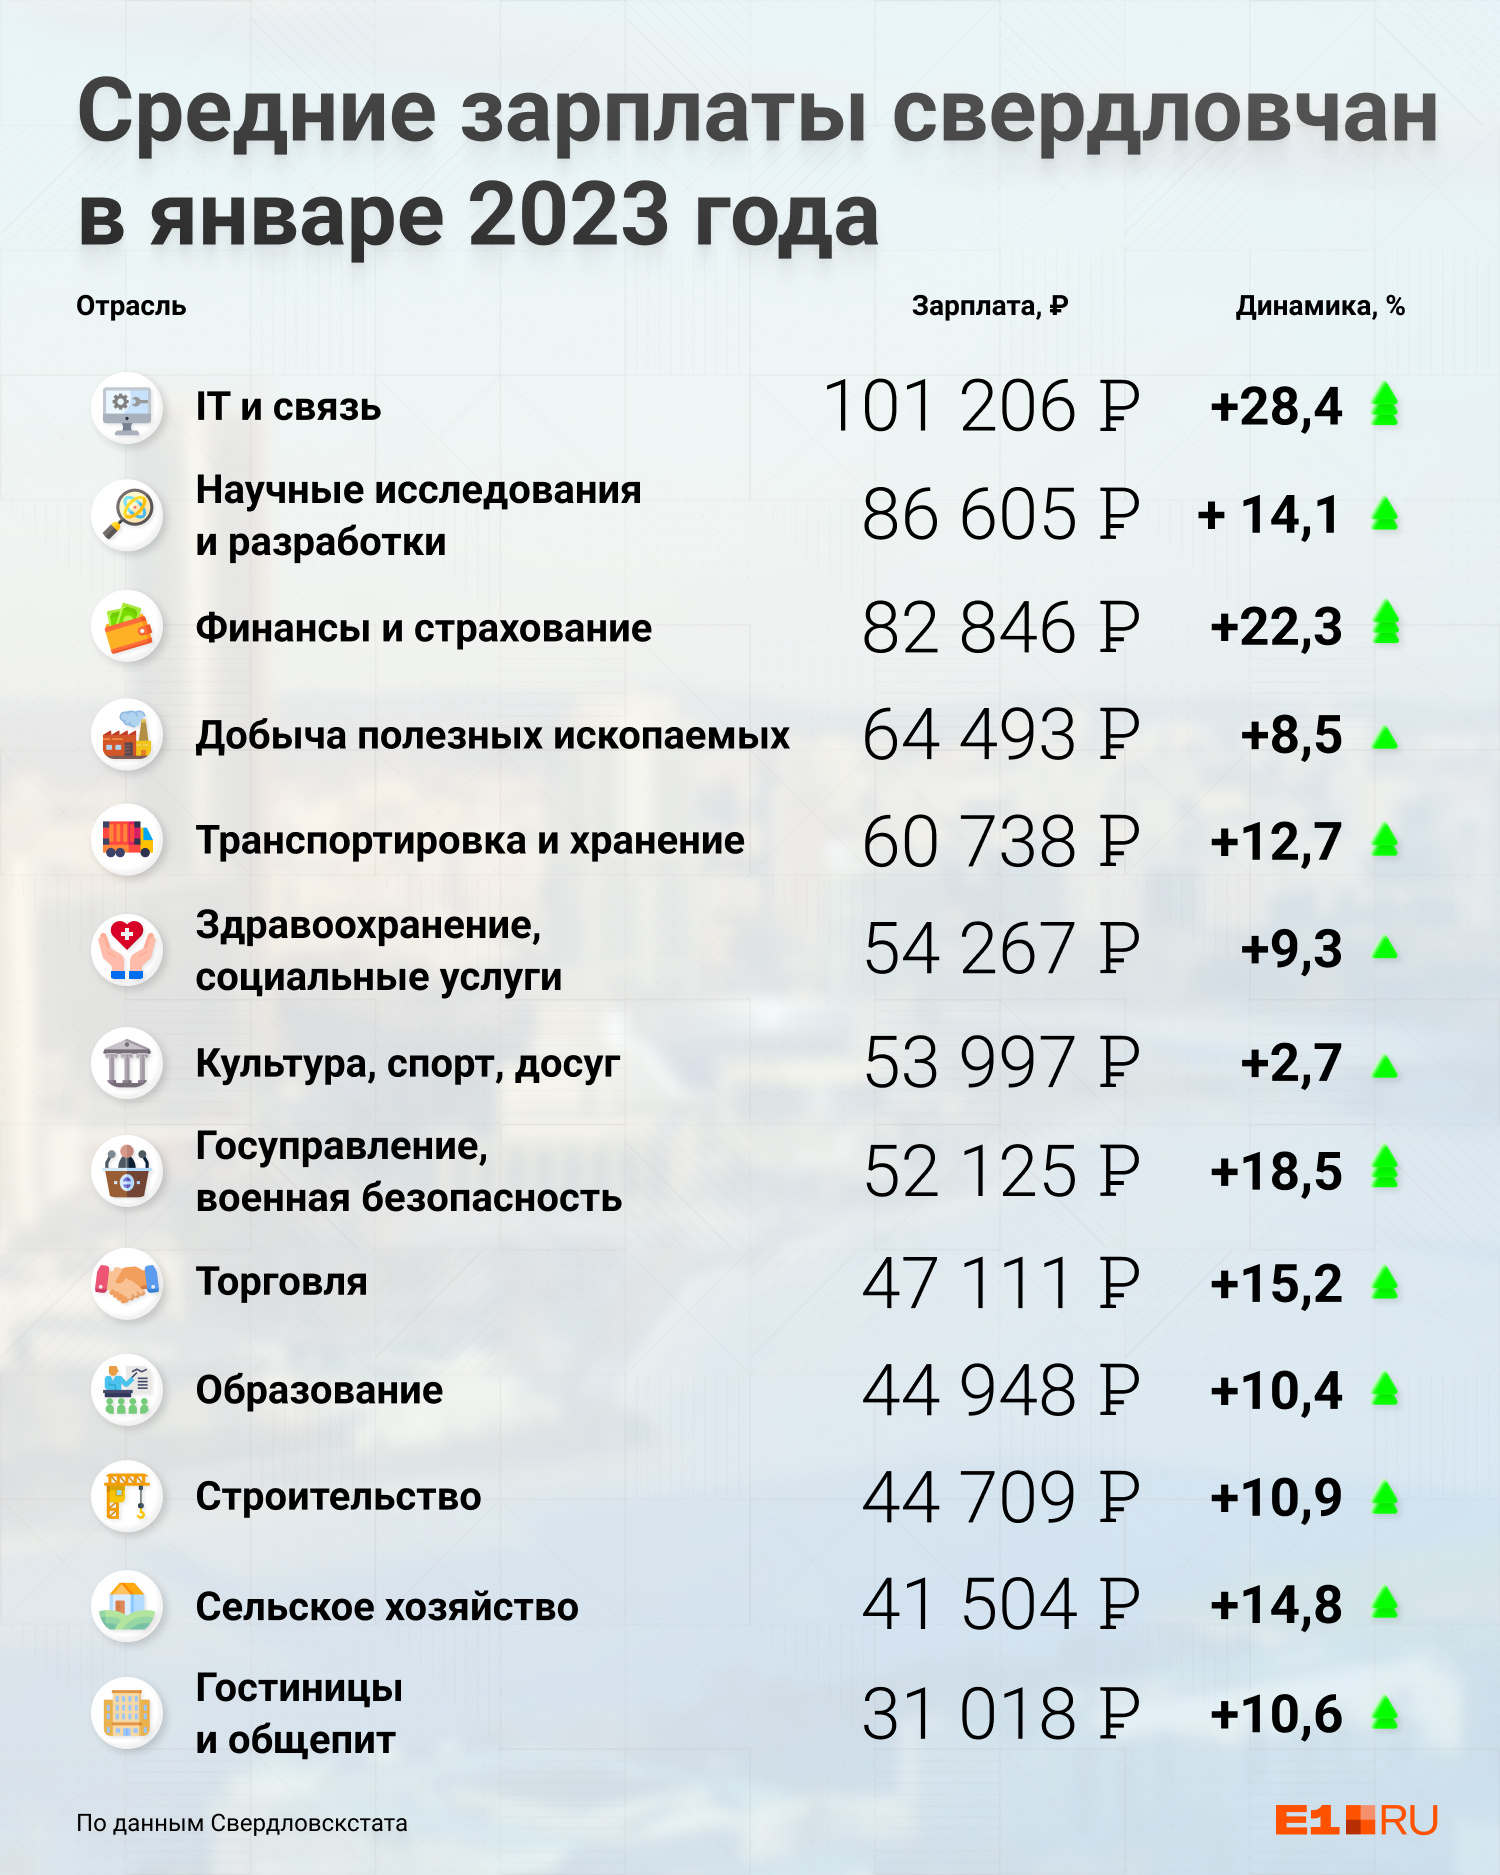 Зарплата полицейского 2023. Средняя заработная плата в полиции 2023. Зарплата по регионам России 2023. Средние зарплаты в России по регионам в 2023 году. Оклады военнослужащих в 2023.